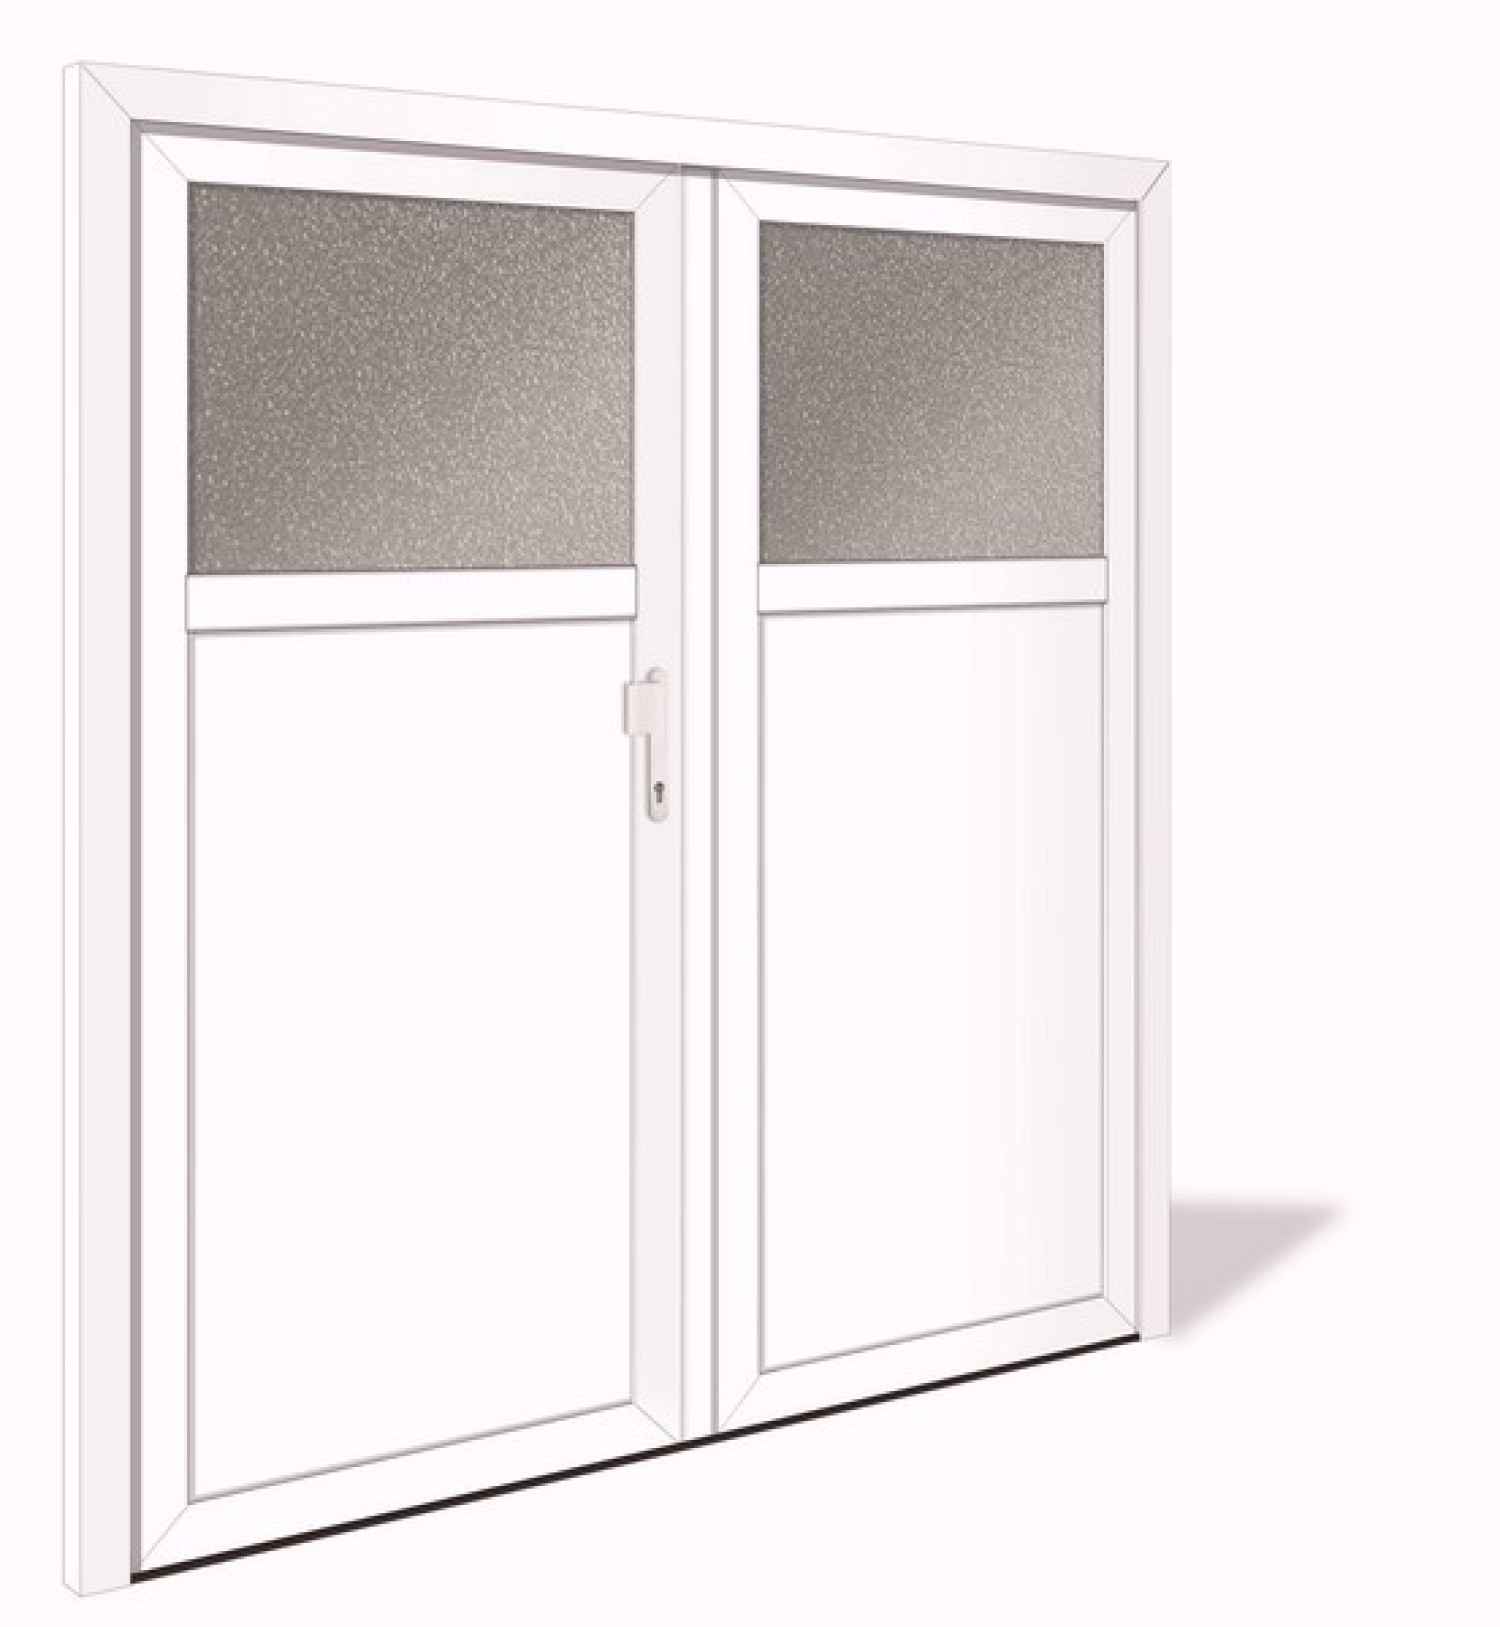 NET 1039-2 Aluminium Doppelflügel Nebeneingangstür mit Glasausschnitt - Interio